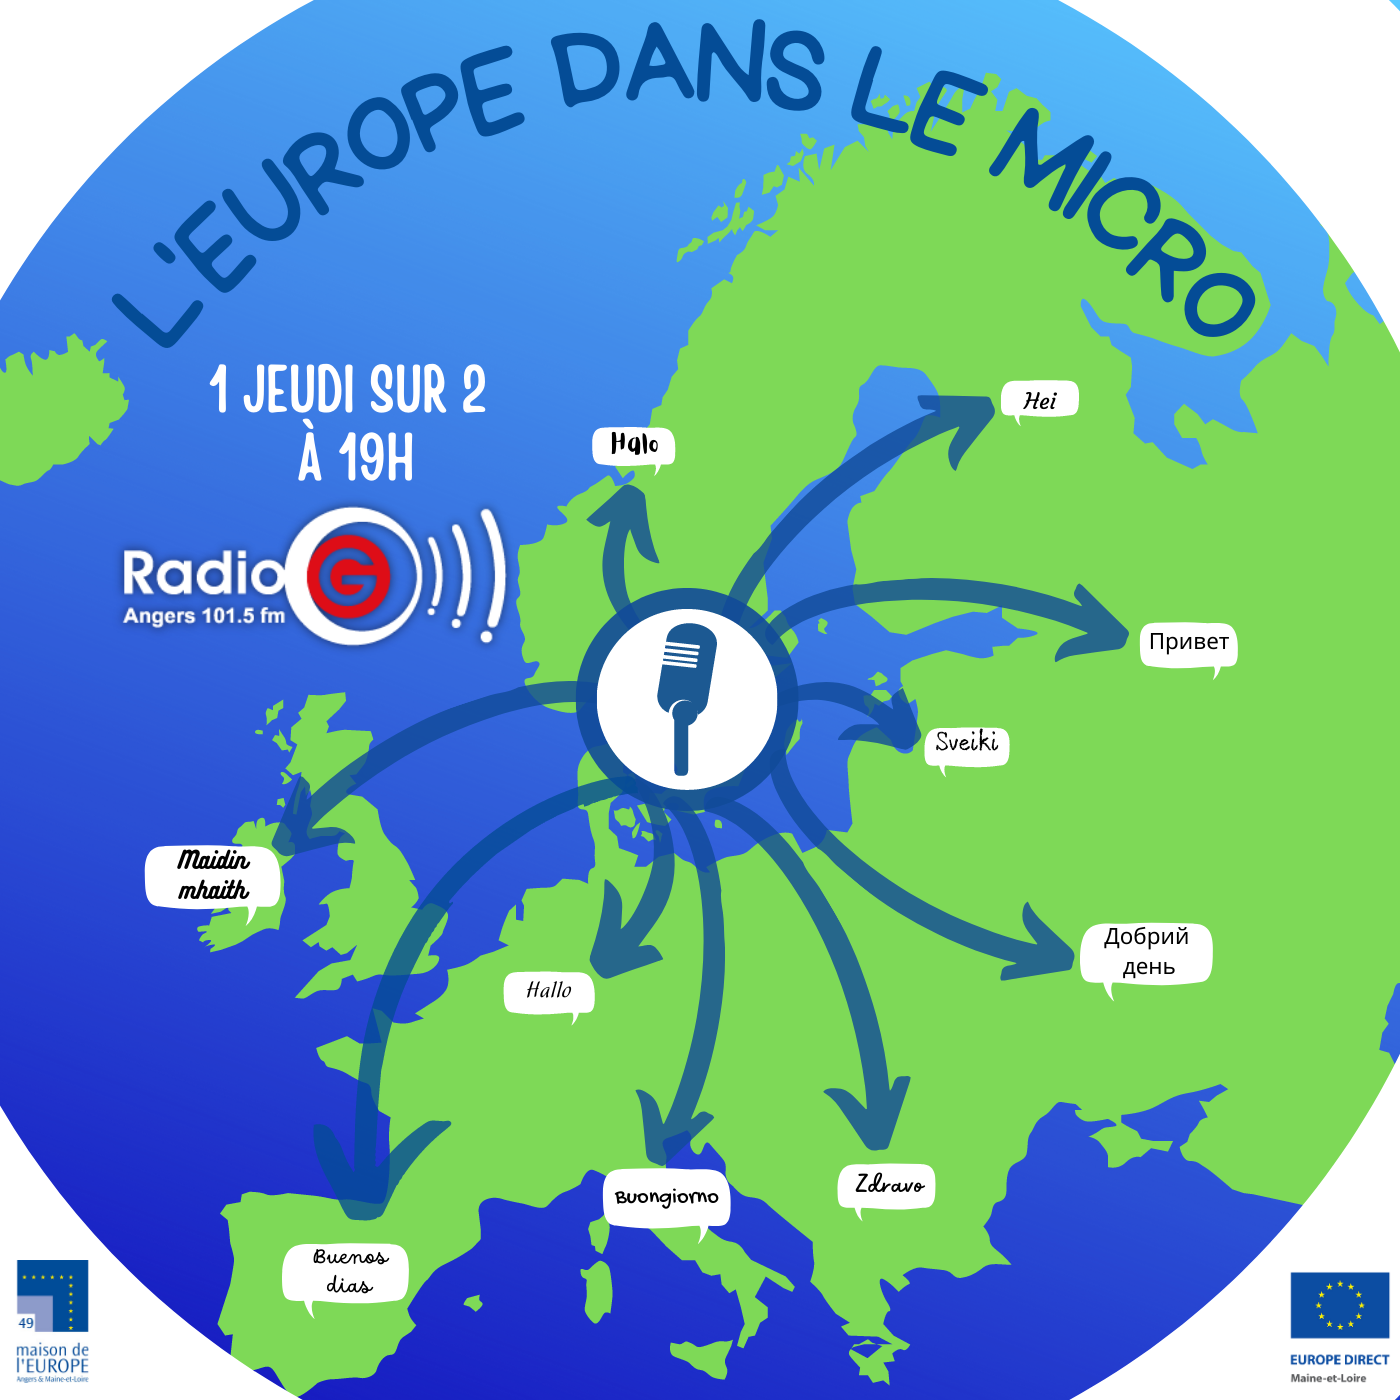 L'Europe dans le micro du 22 06 2021 Magazine radio sur l'europe L'Europe dans le micro du 22 06 2021